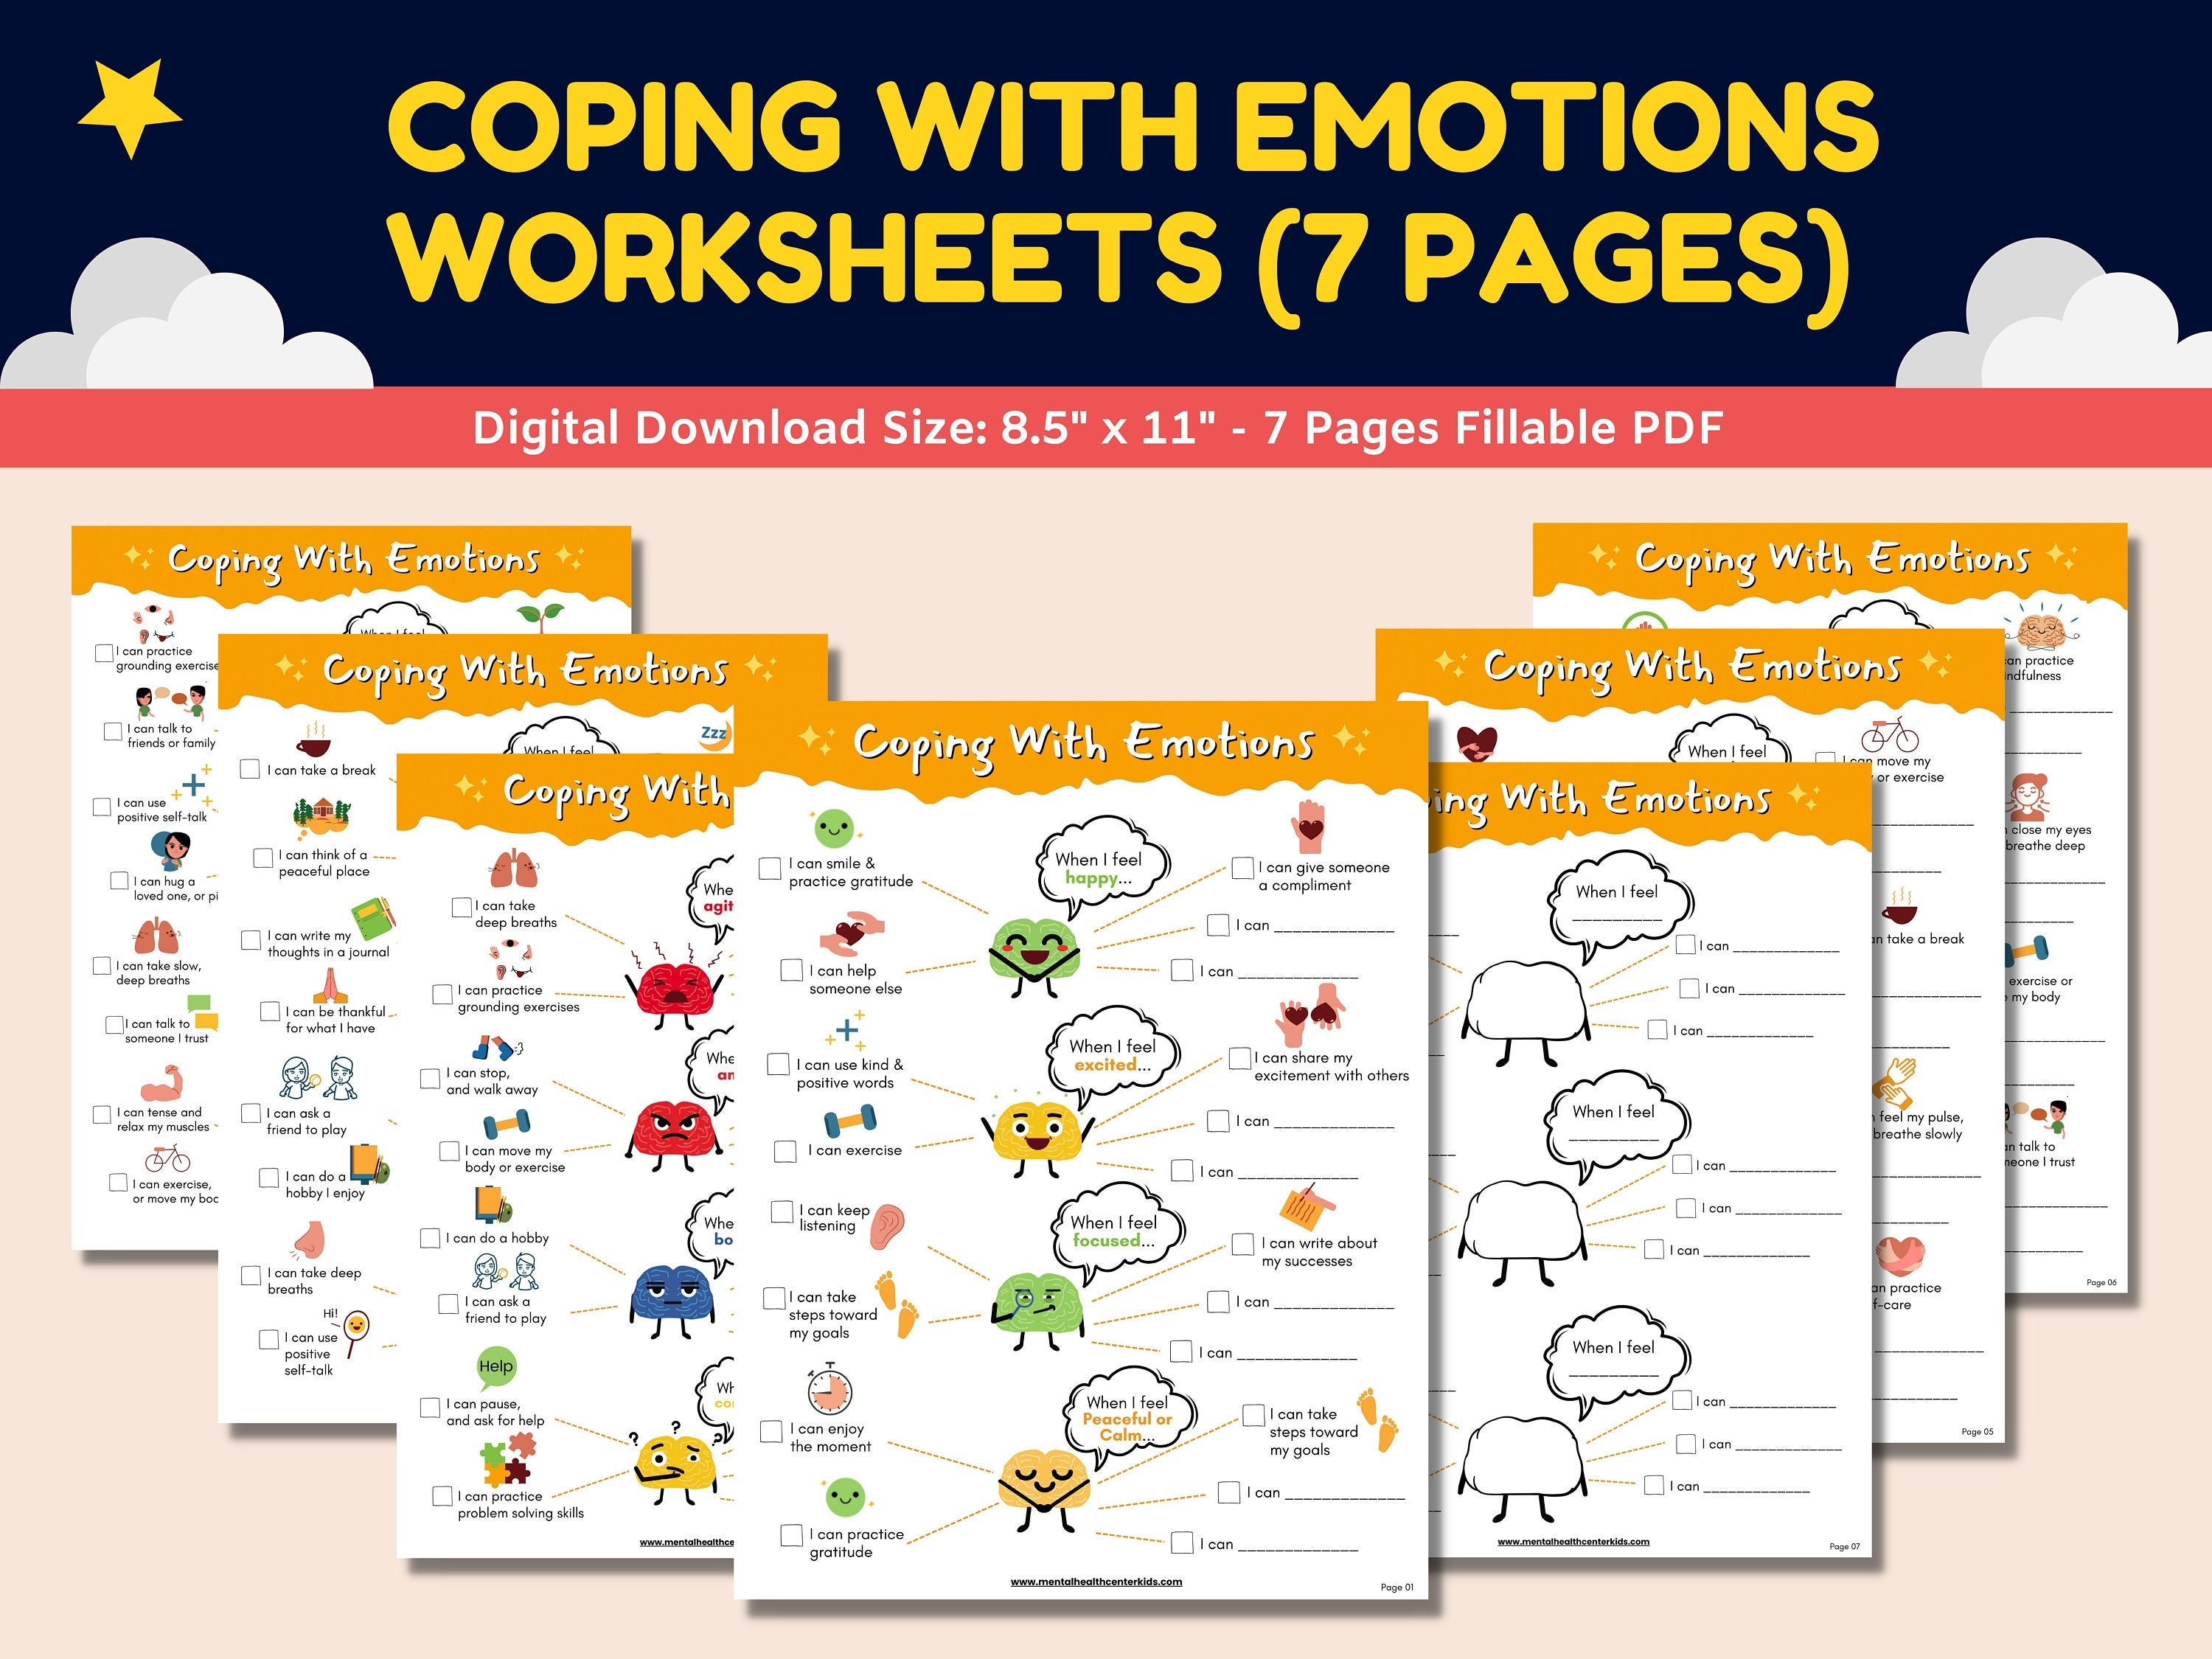 emoji-ice-breaker-game-school-worksheet-learning-emotions